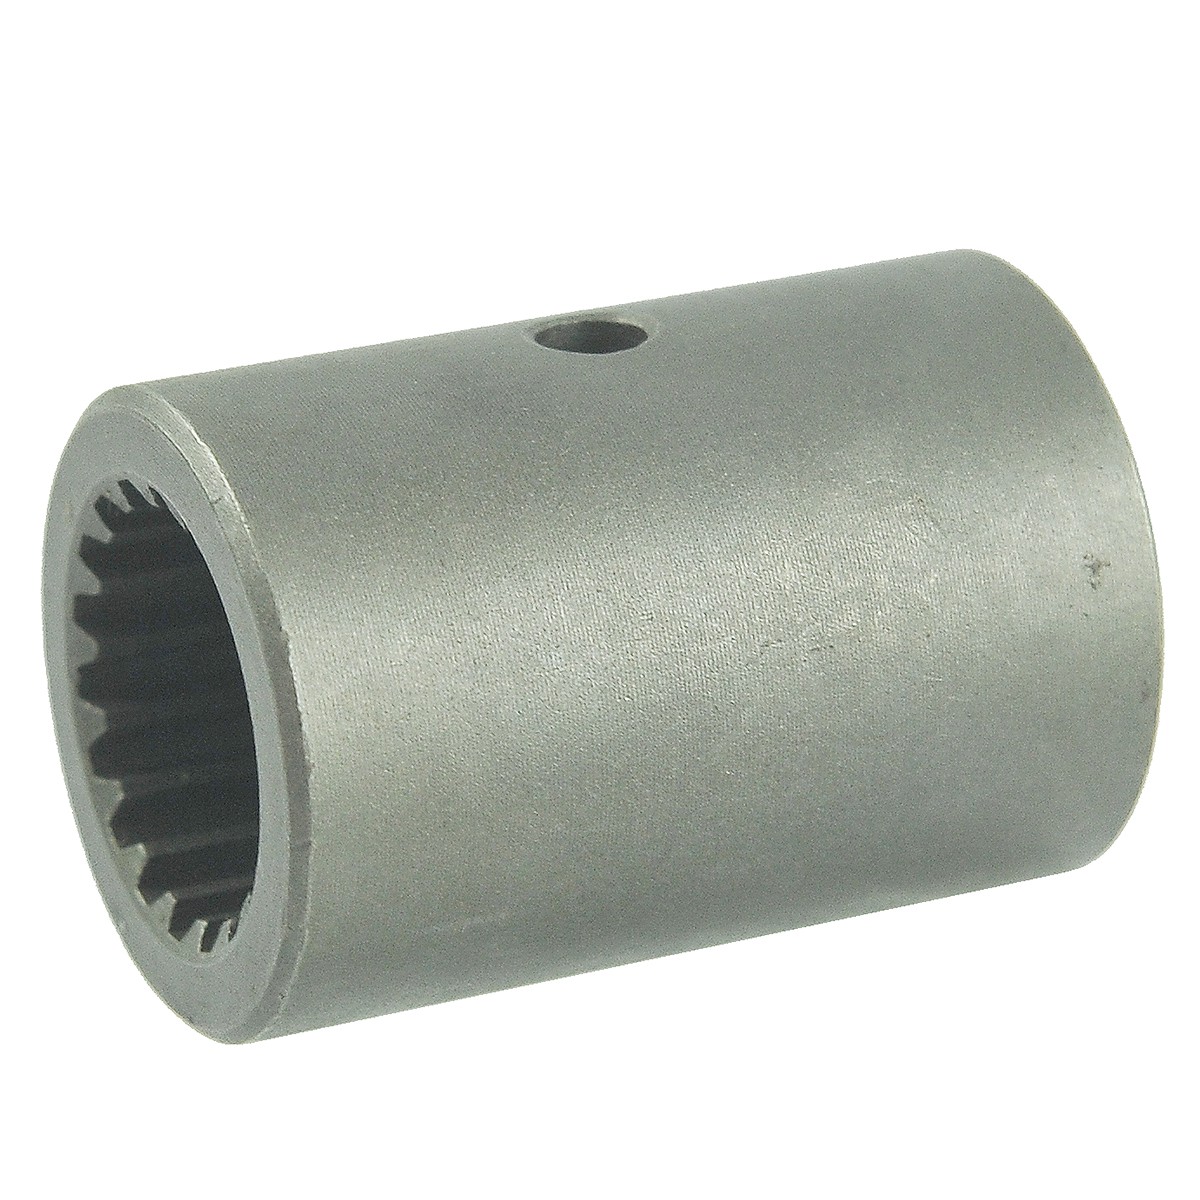 Shaft connector 18T / 51 mm / Kubota L02/M7040 / 33710-41310 / 5-15-237-04